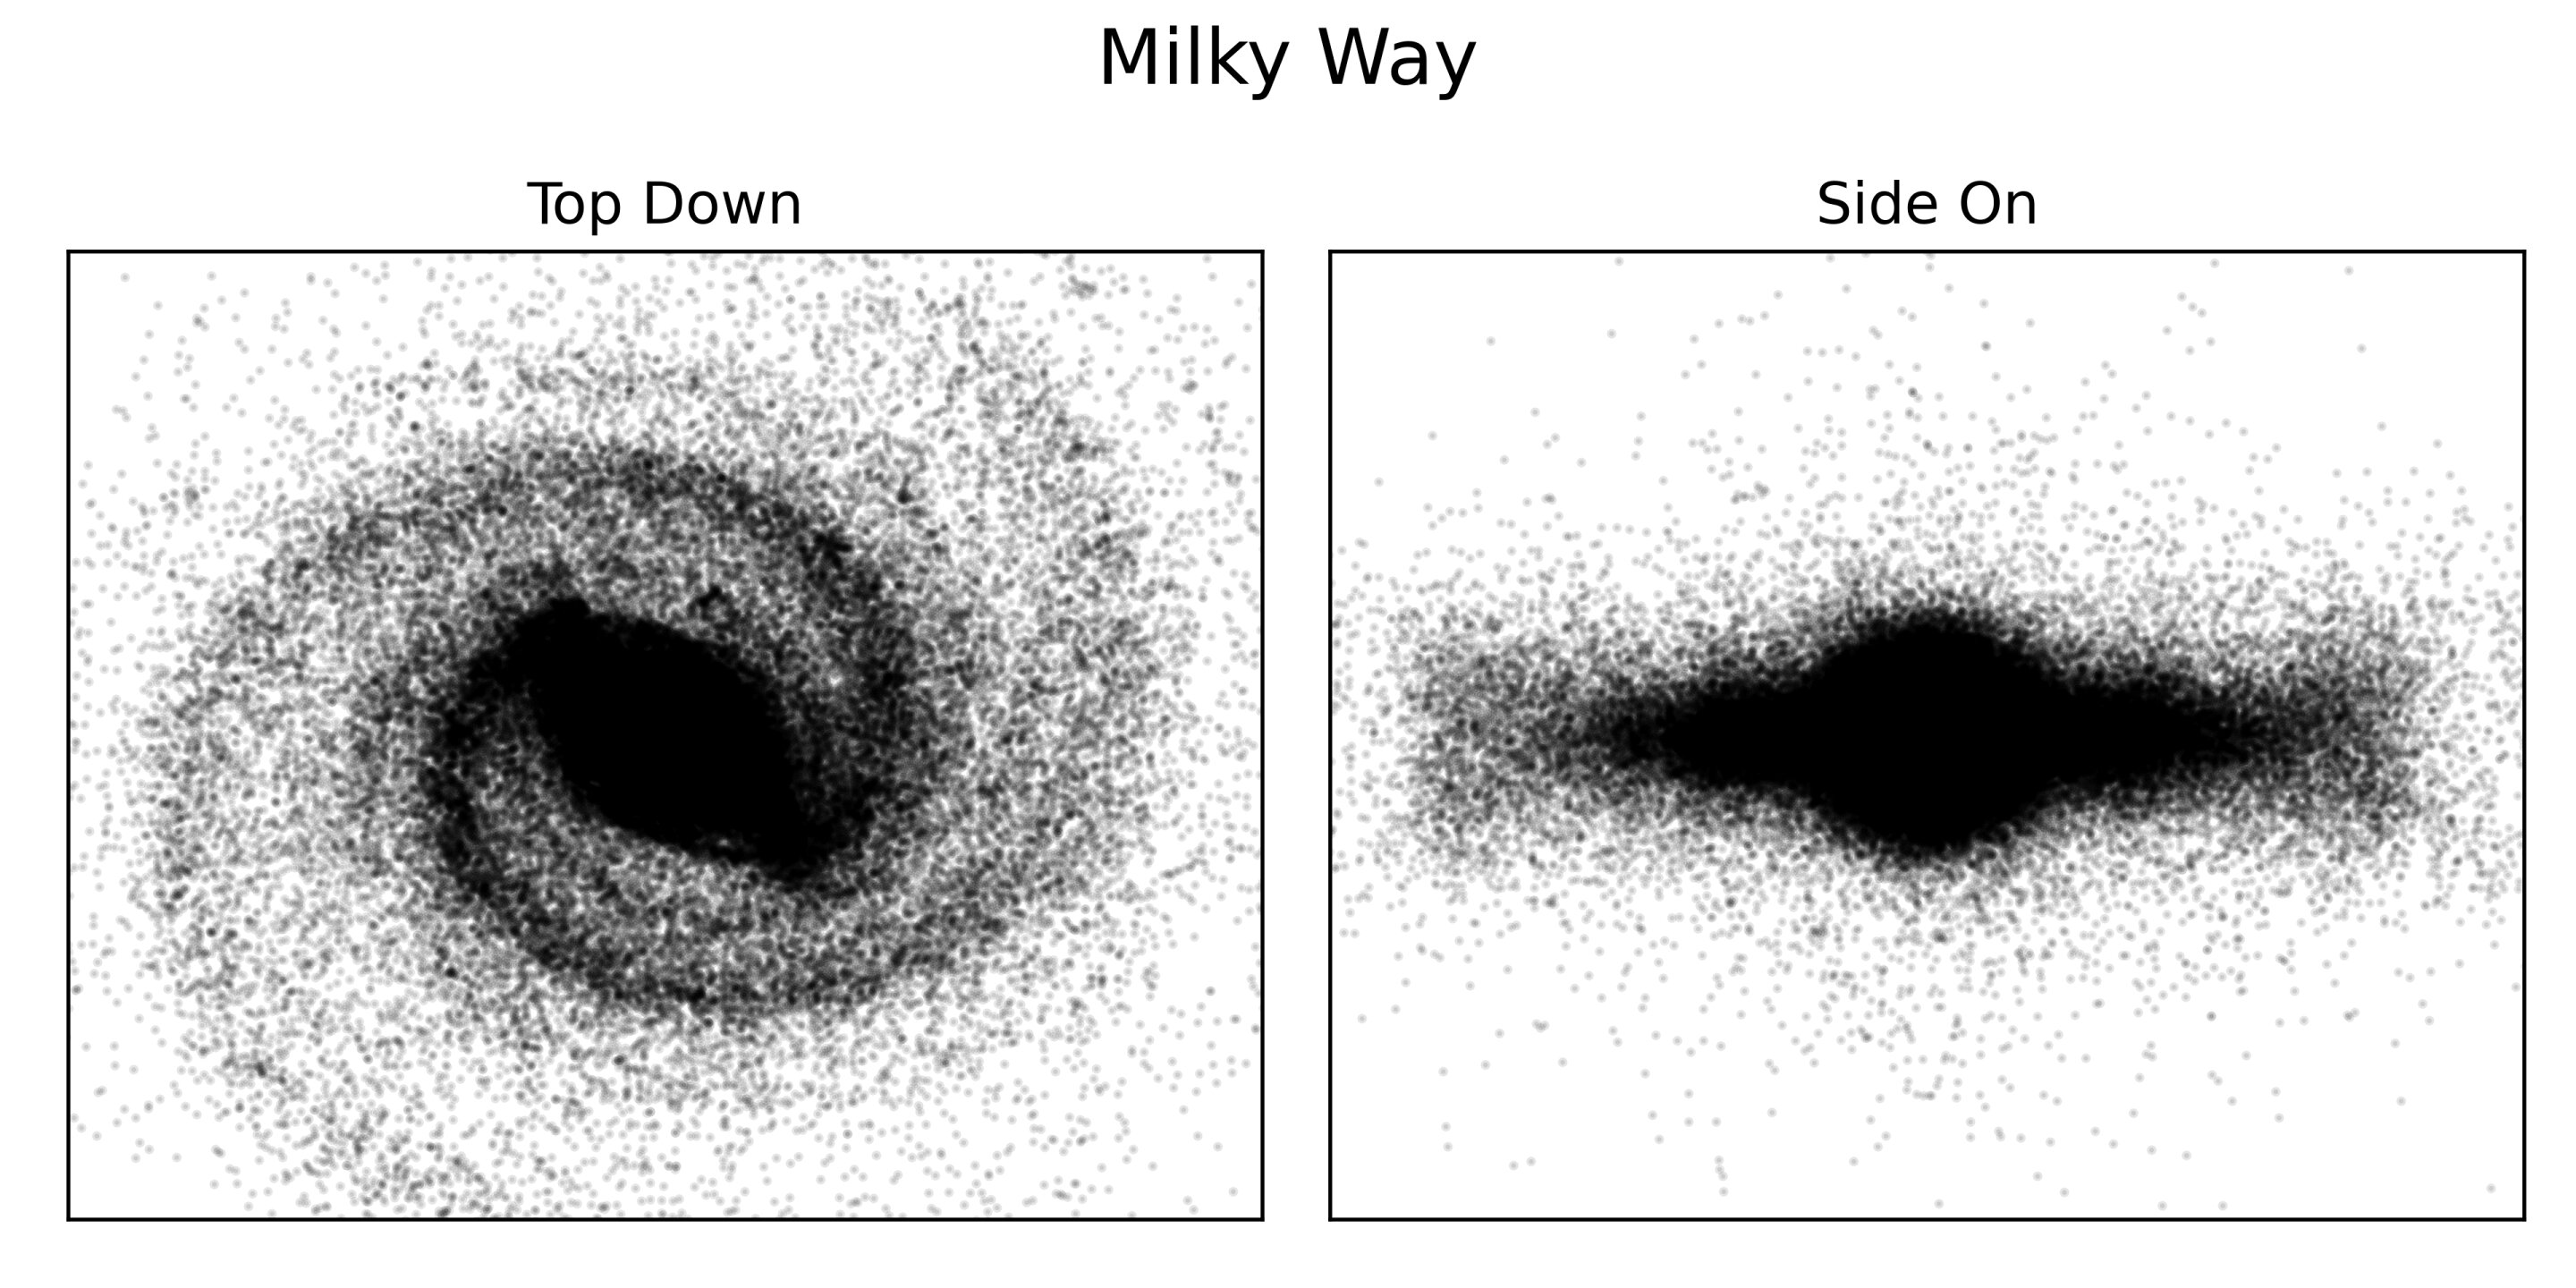 Carte montrant la répartition des étoiles dans la Voie lactée visible.  Les bras spiraux de la galaxie sont clairement visibles dans l'image de haut en bas.